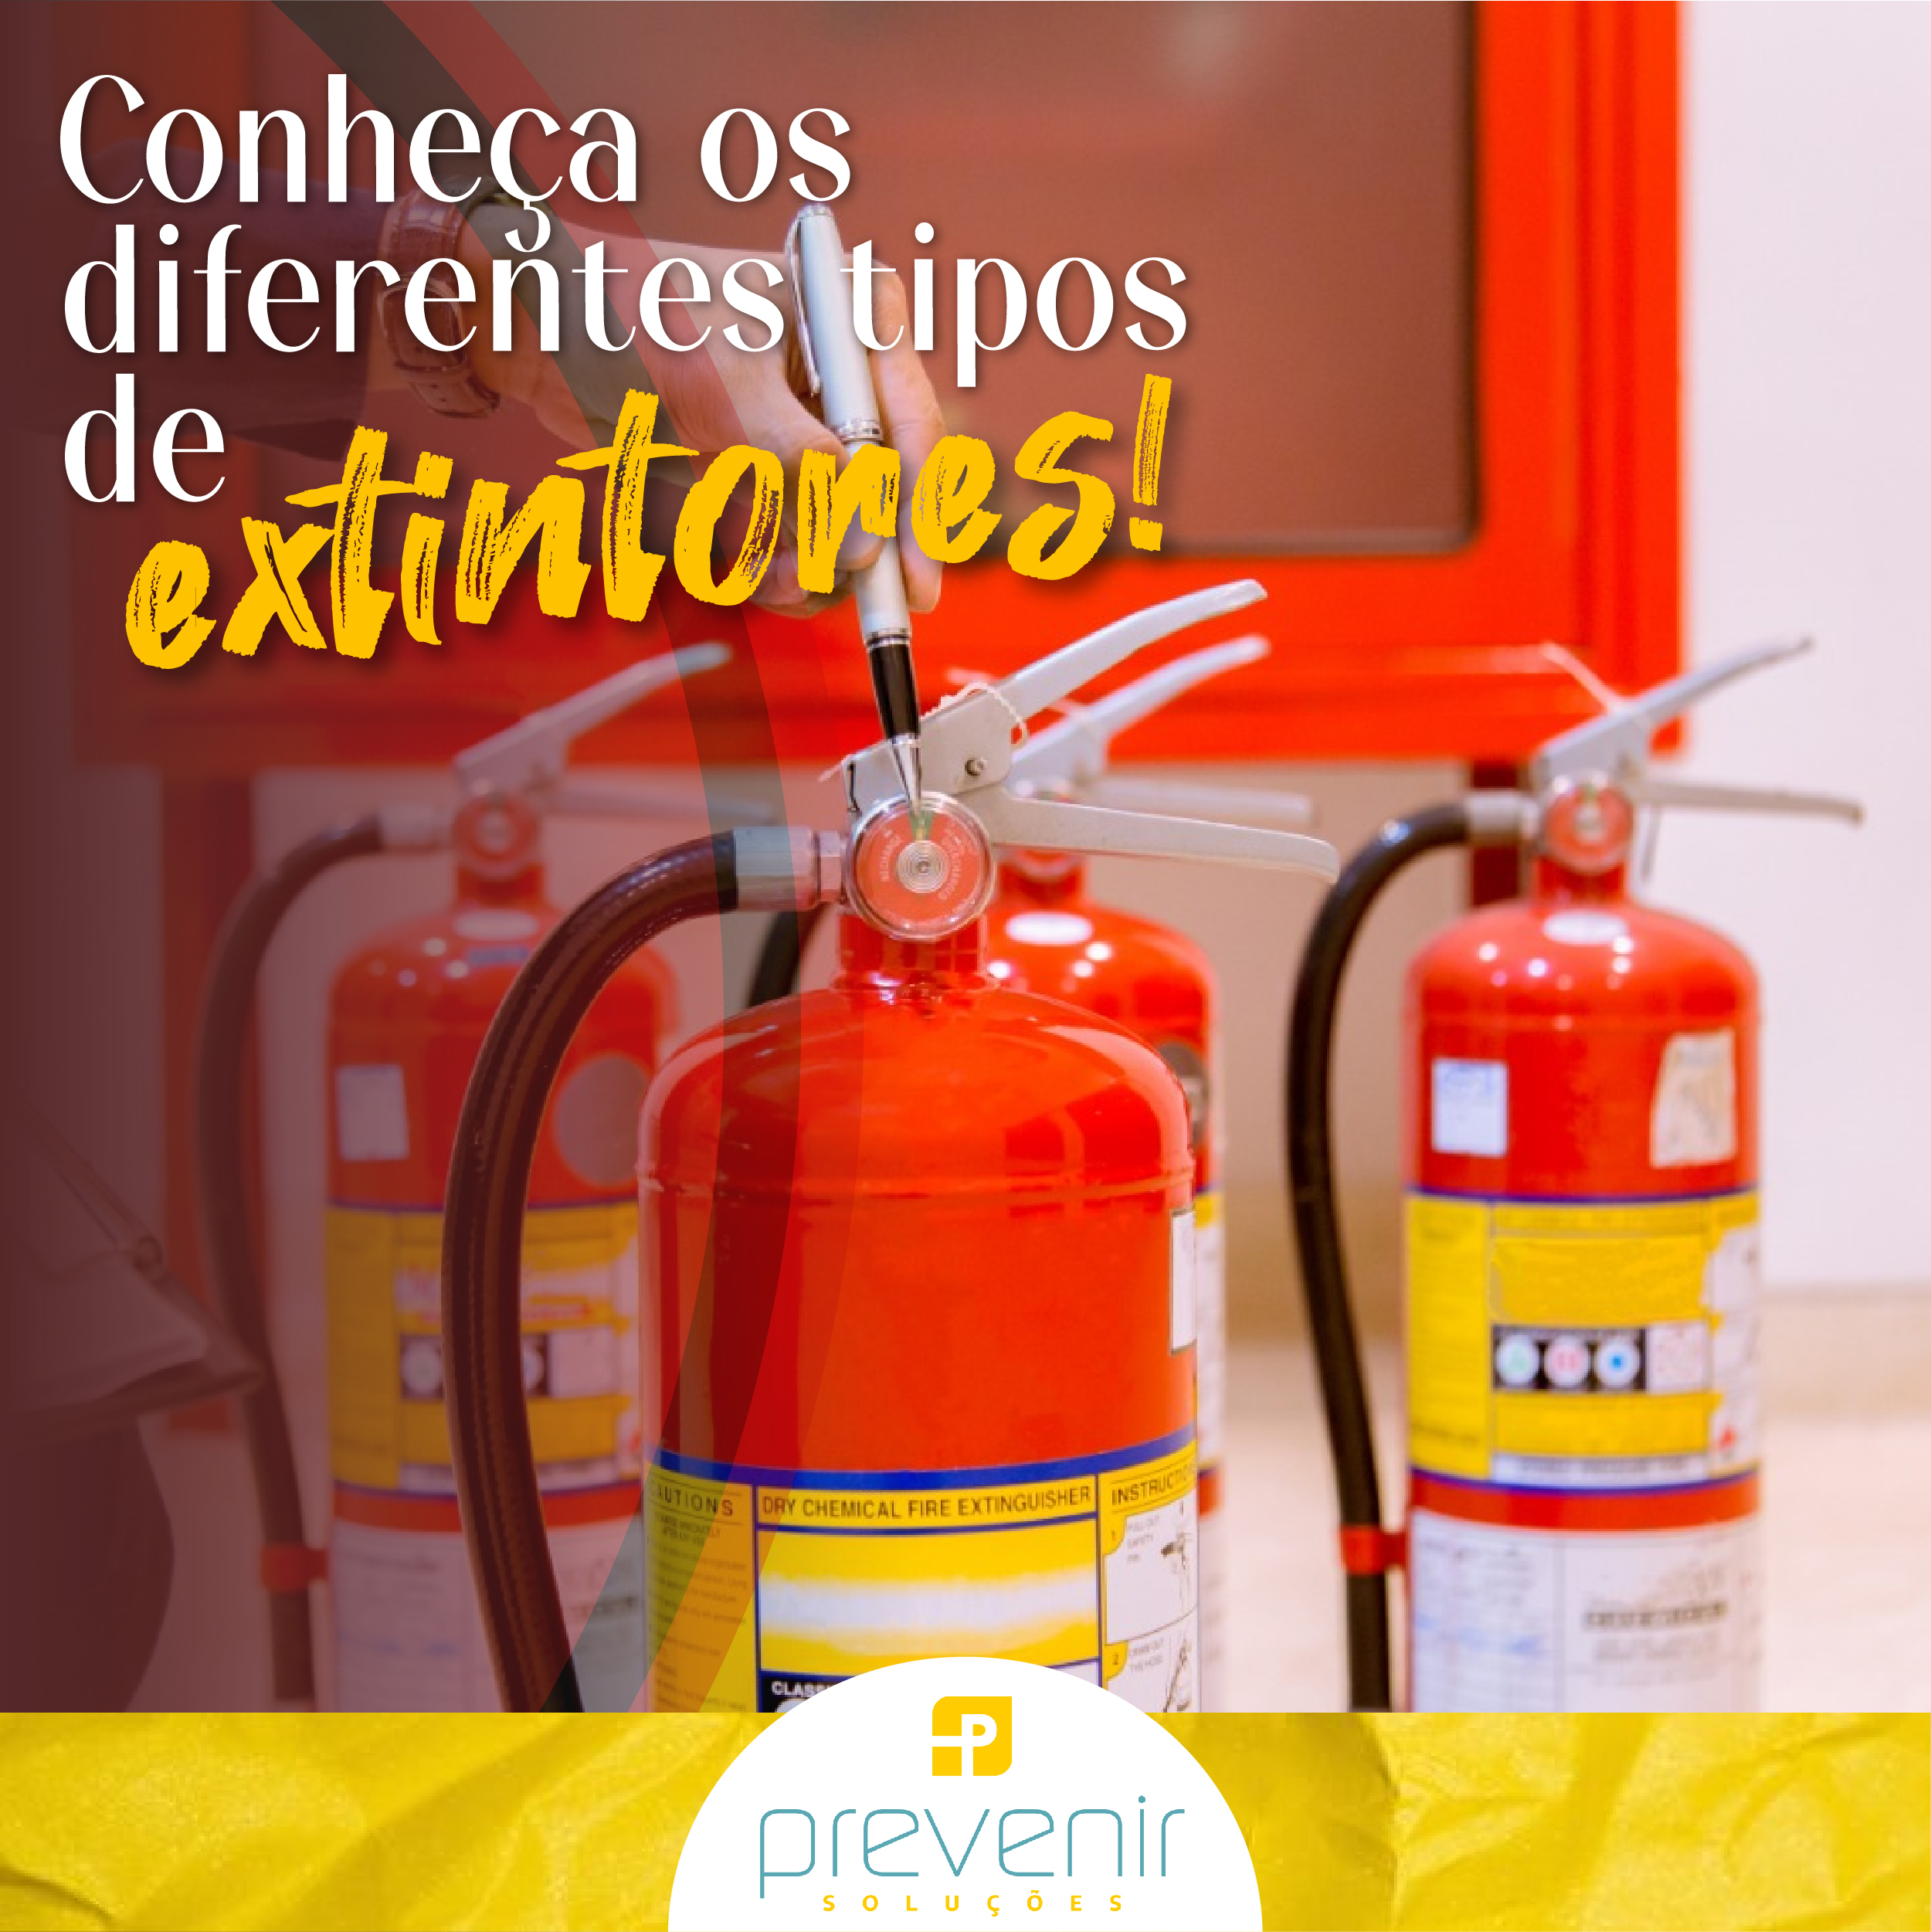 Conheça os diferentes tipos de extintores